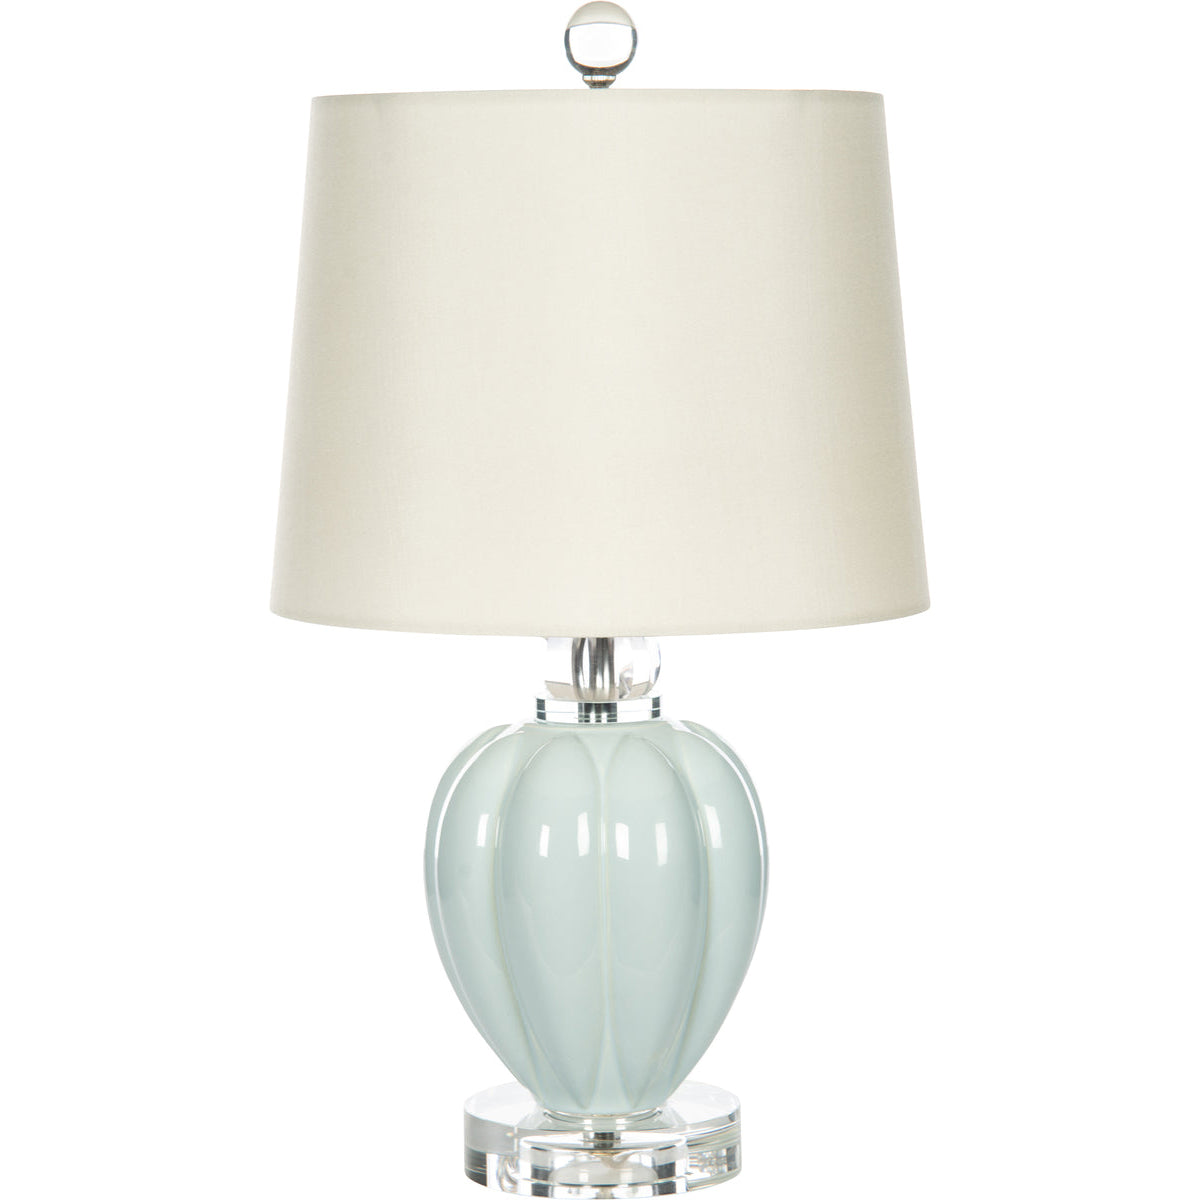 Melea Markell Lilia - Romantic Creamy Pastel Ceramic Table Lamp